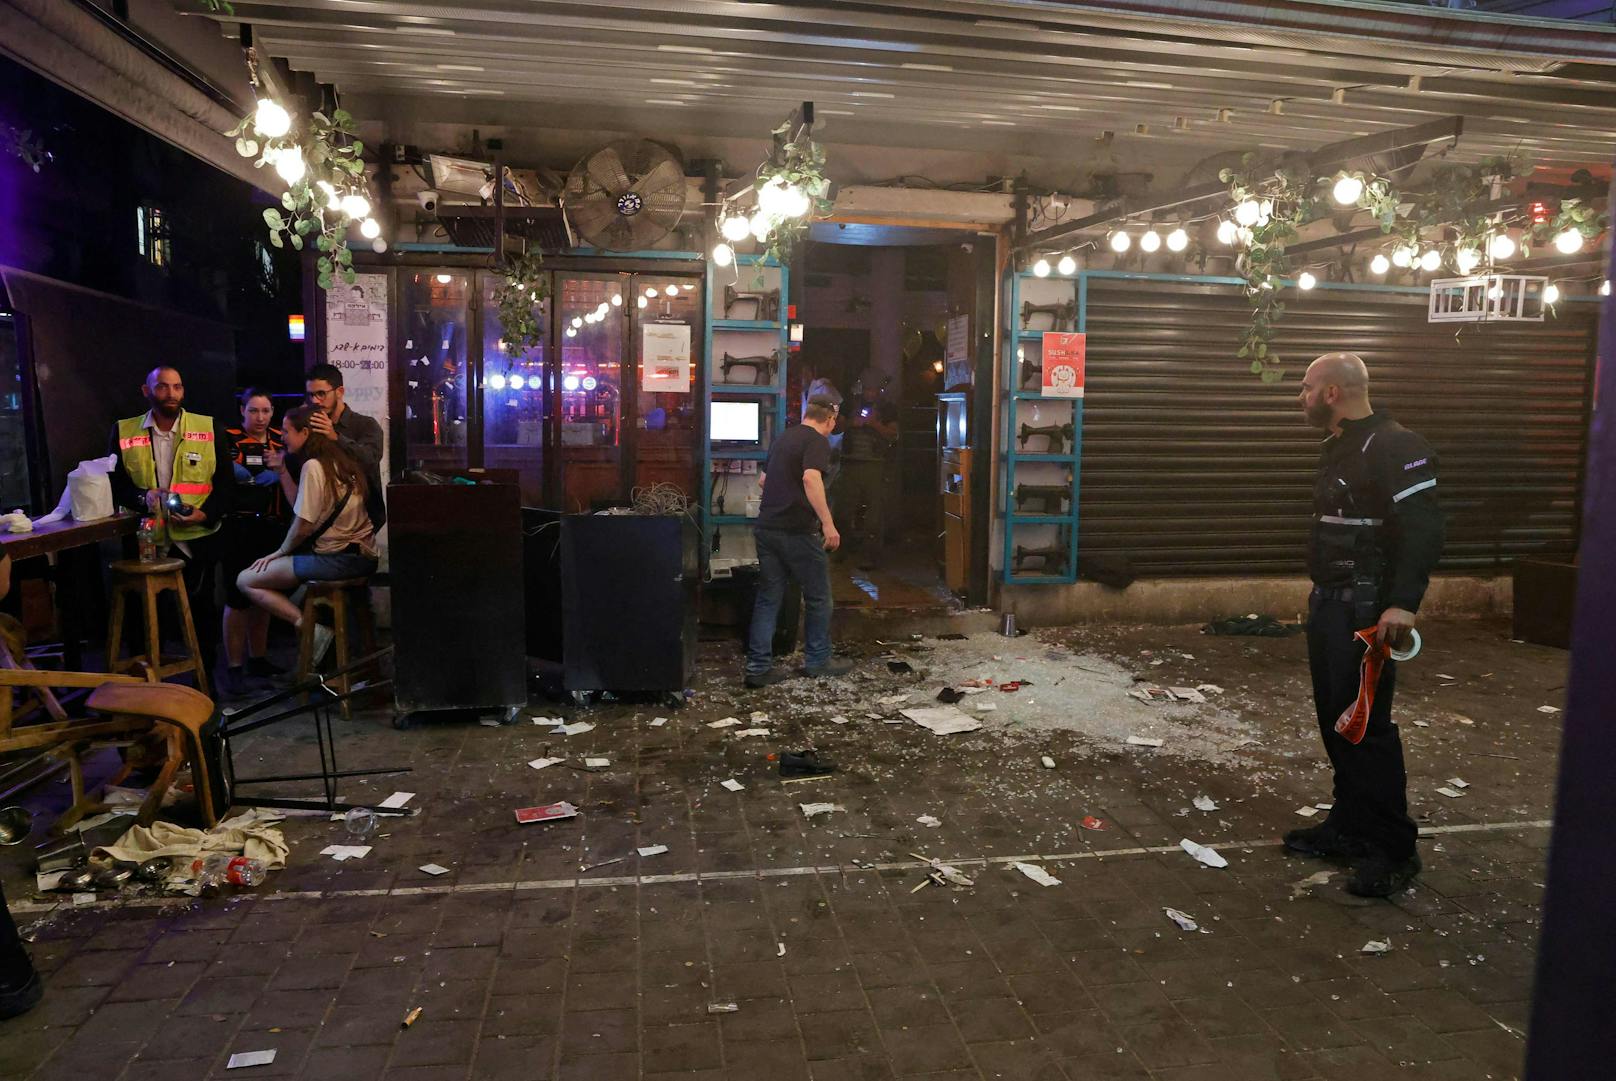 In Tel Aviv kamen am Donnerstagabend (07. April 2022) mindestens zwei Personen bei einem Anschlag ums Leben. 